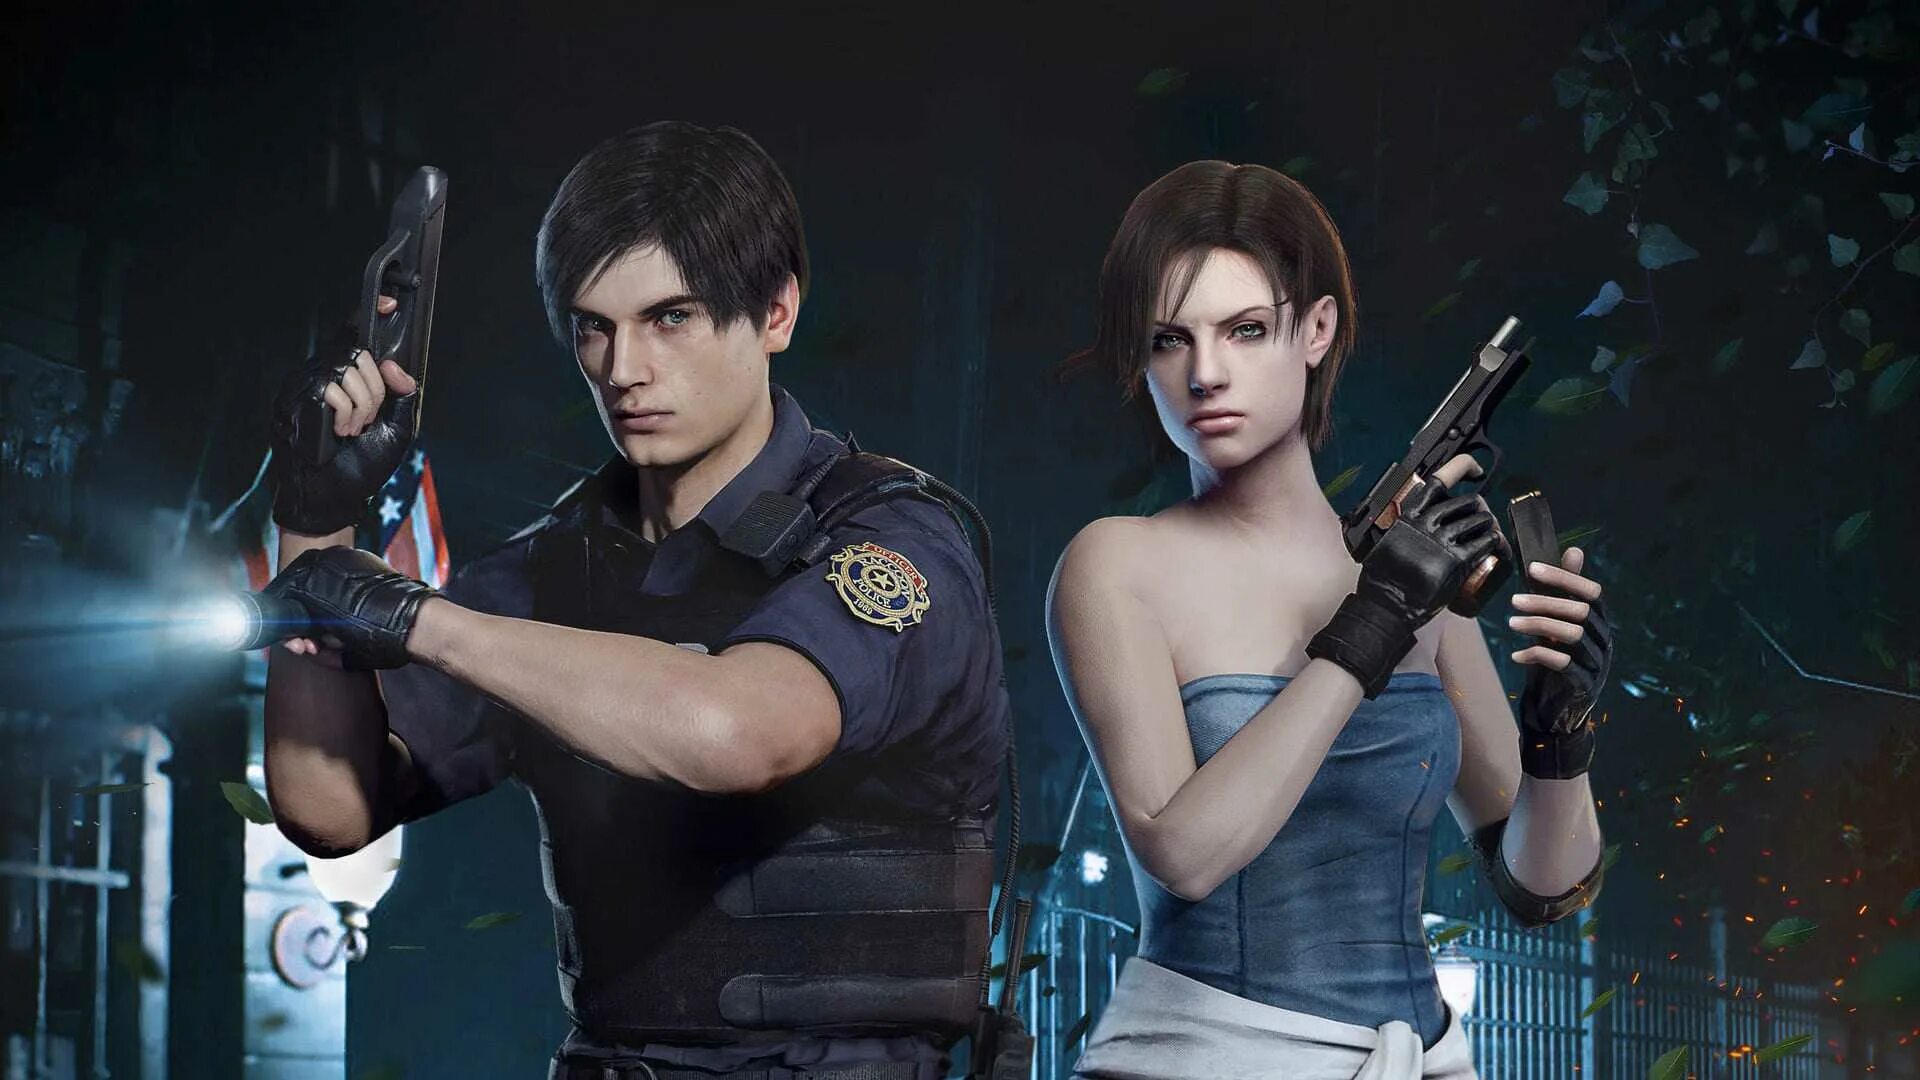 Джилл Валентайн Resident Evil 4. Main resident